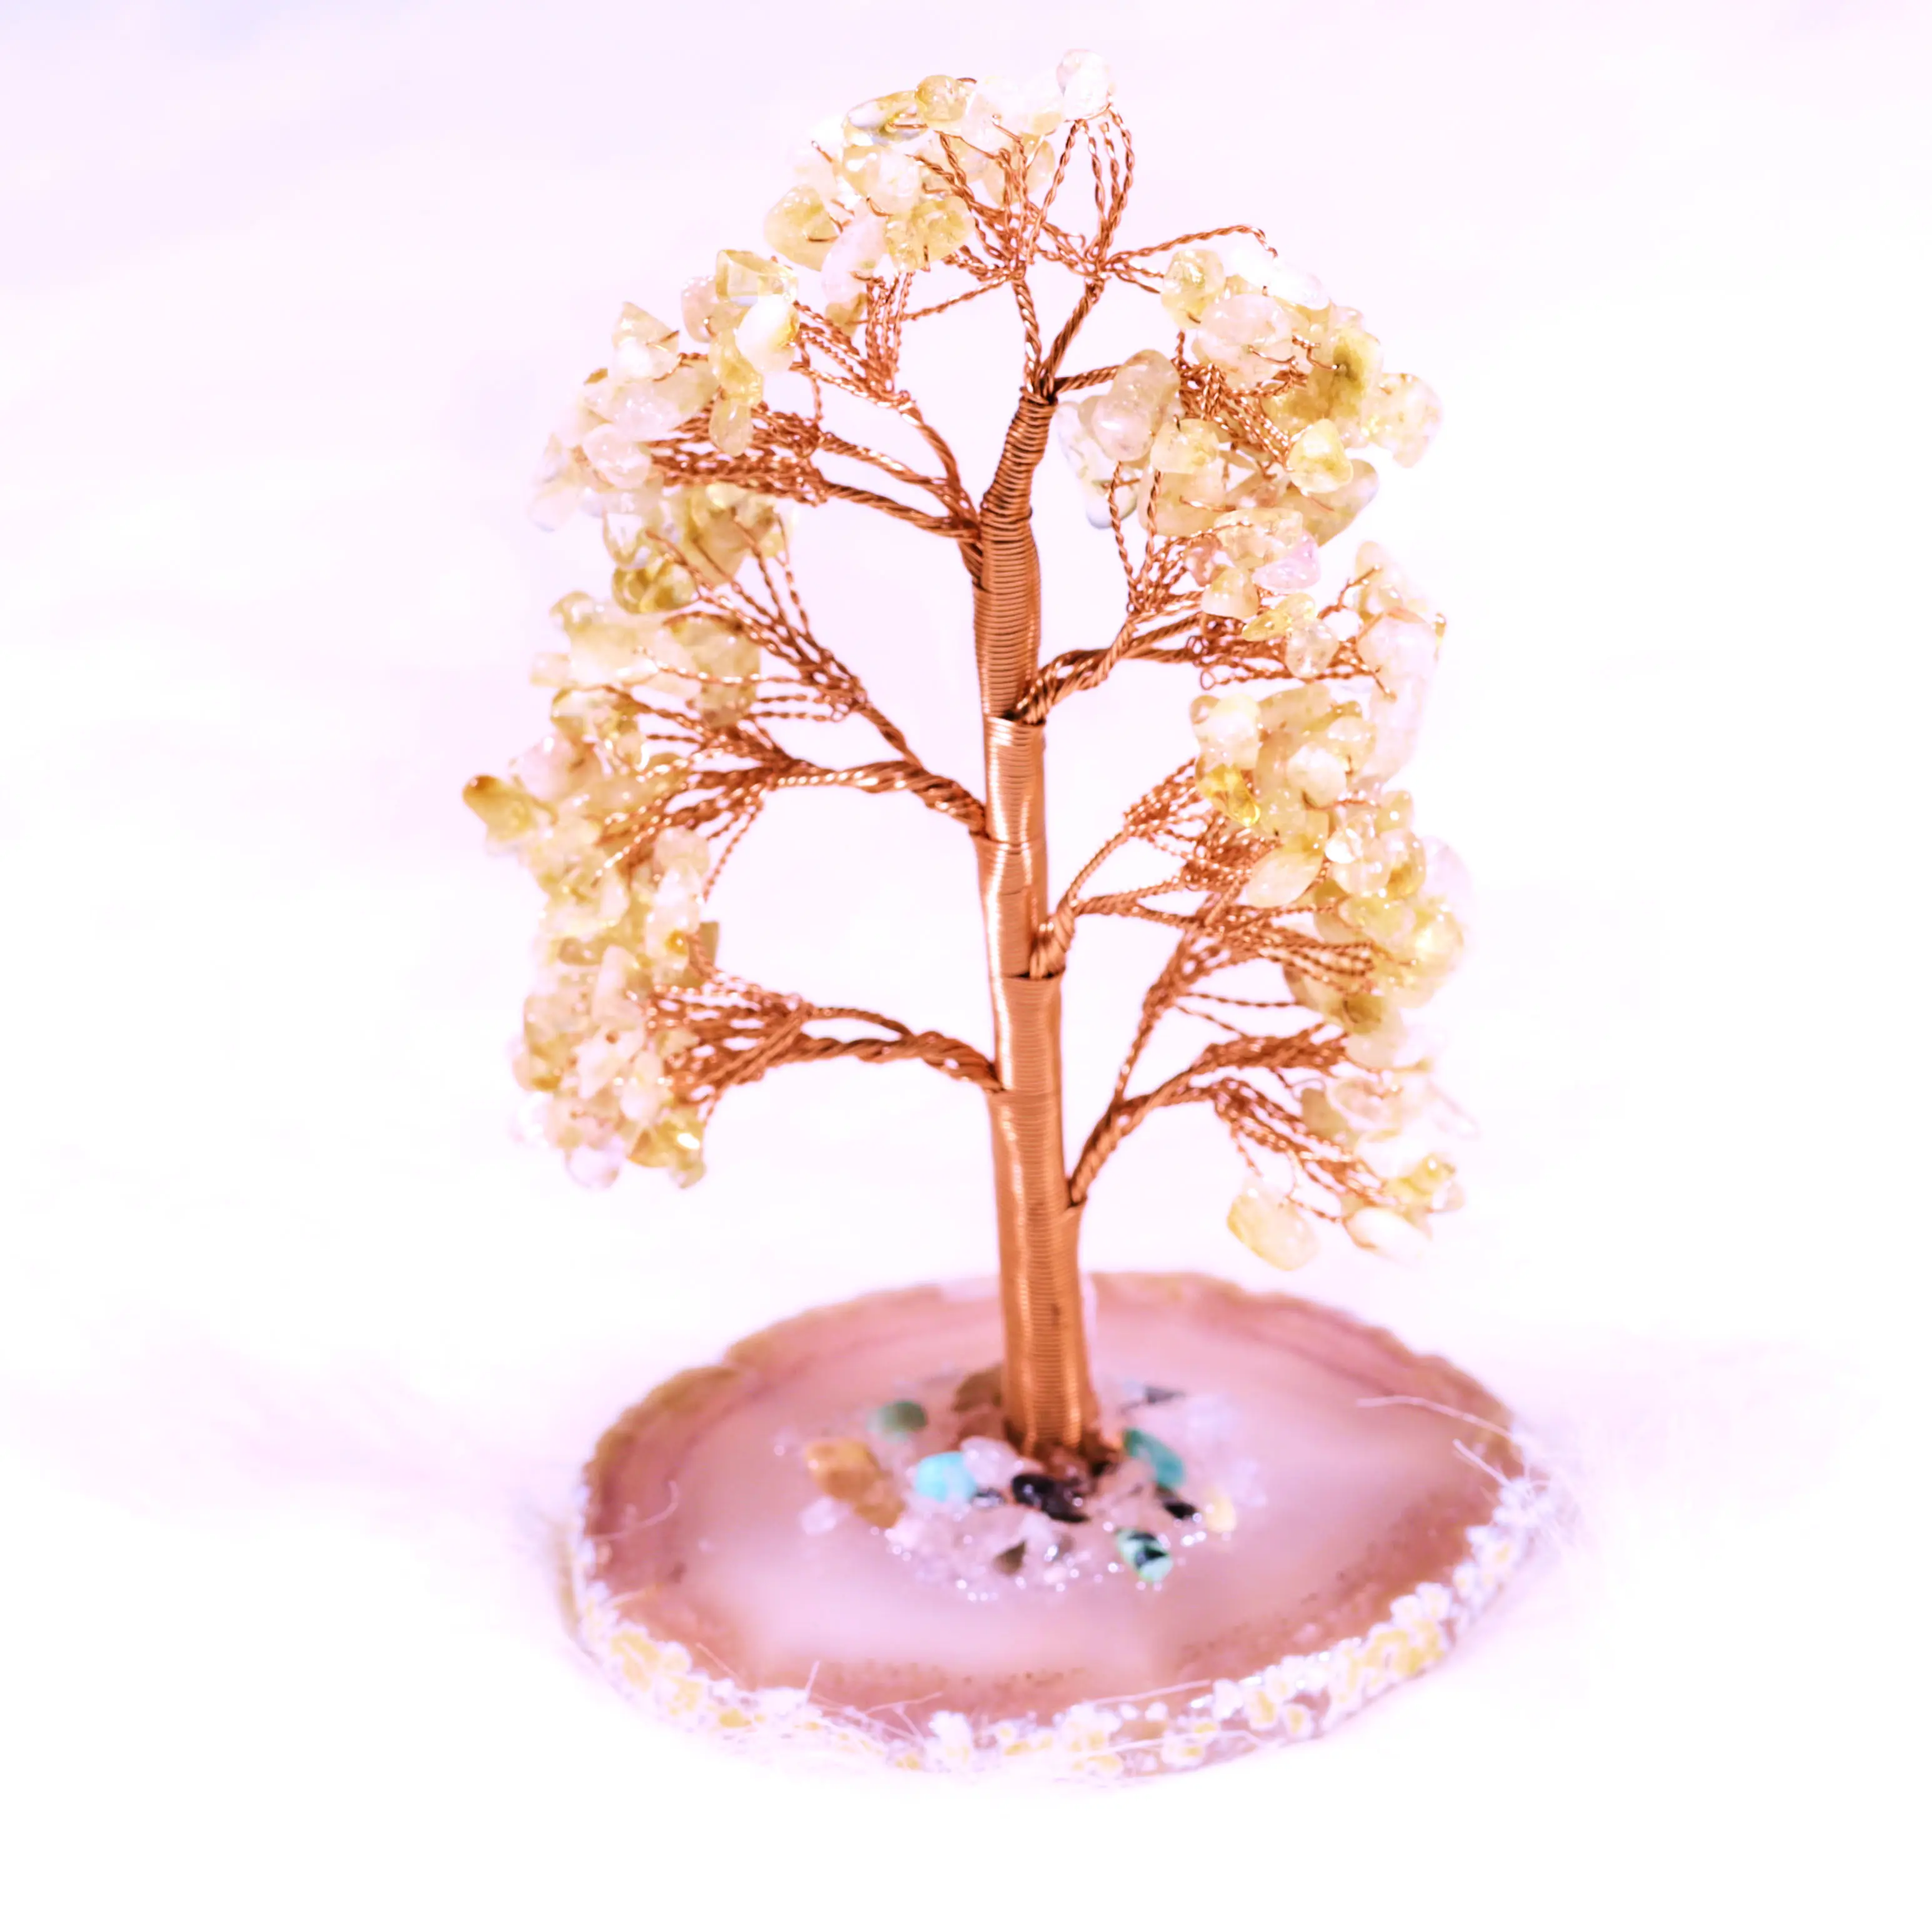 بسعر الجملة أشجار كريمة لامعة من لون اللون مع قاعدة من جمجمة الجواهر من كريستالات Amayra للتصدير من الهند